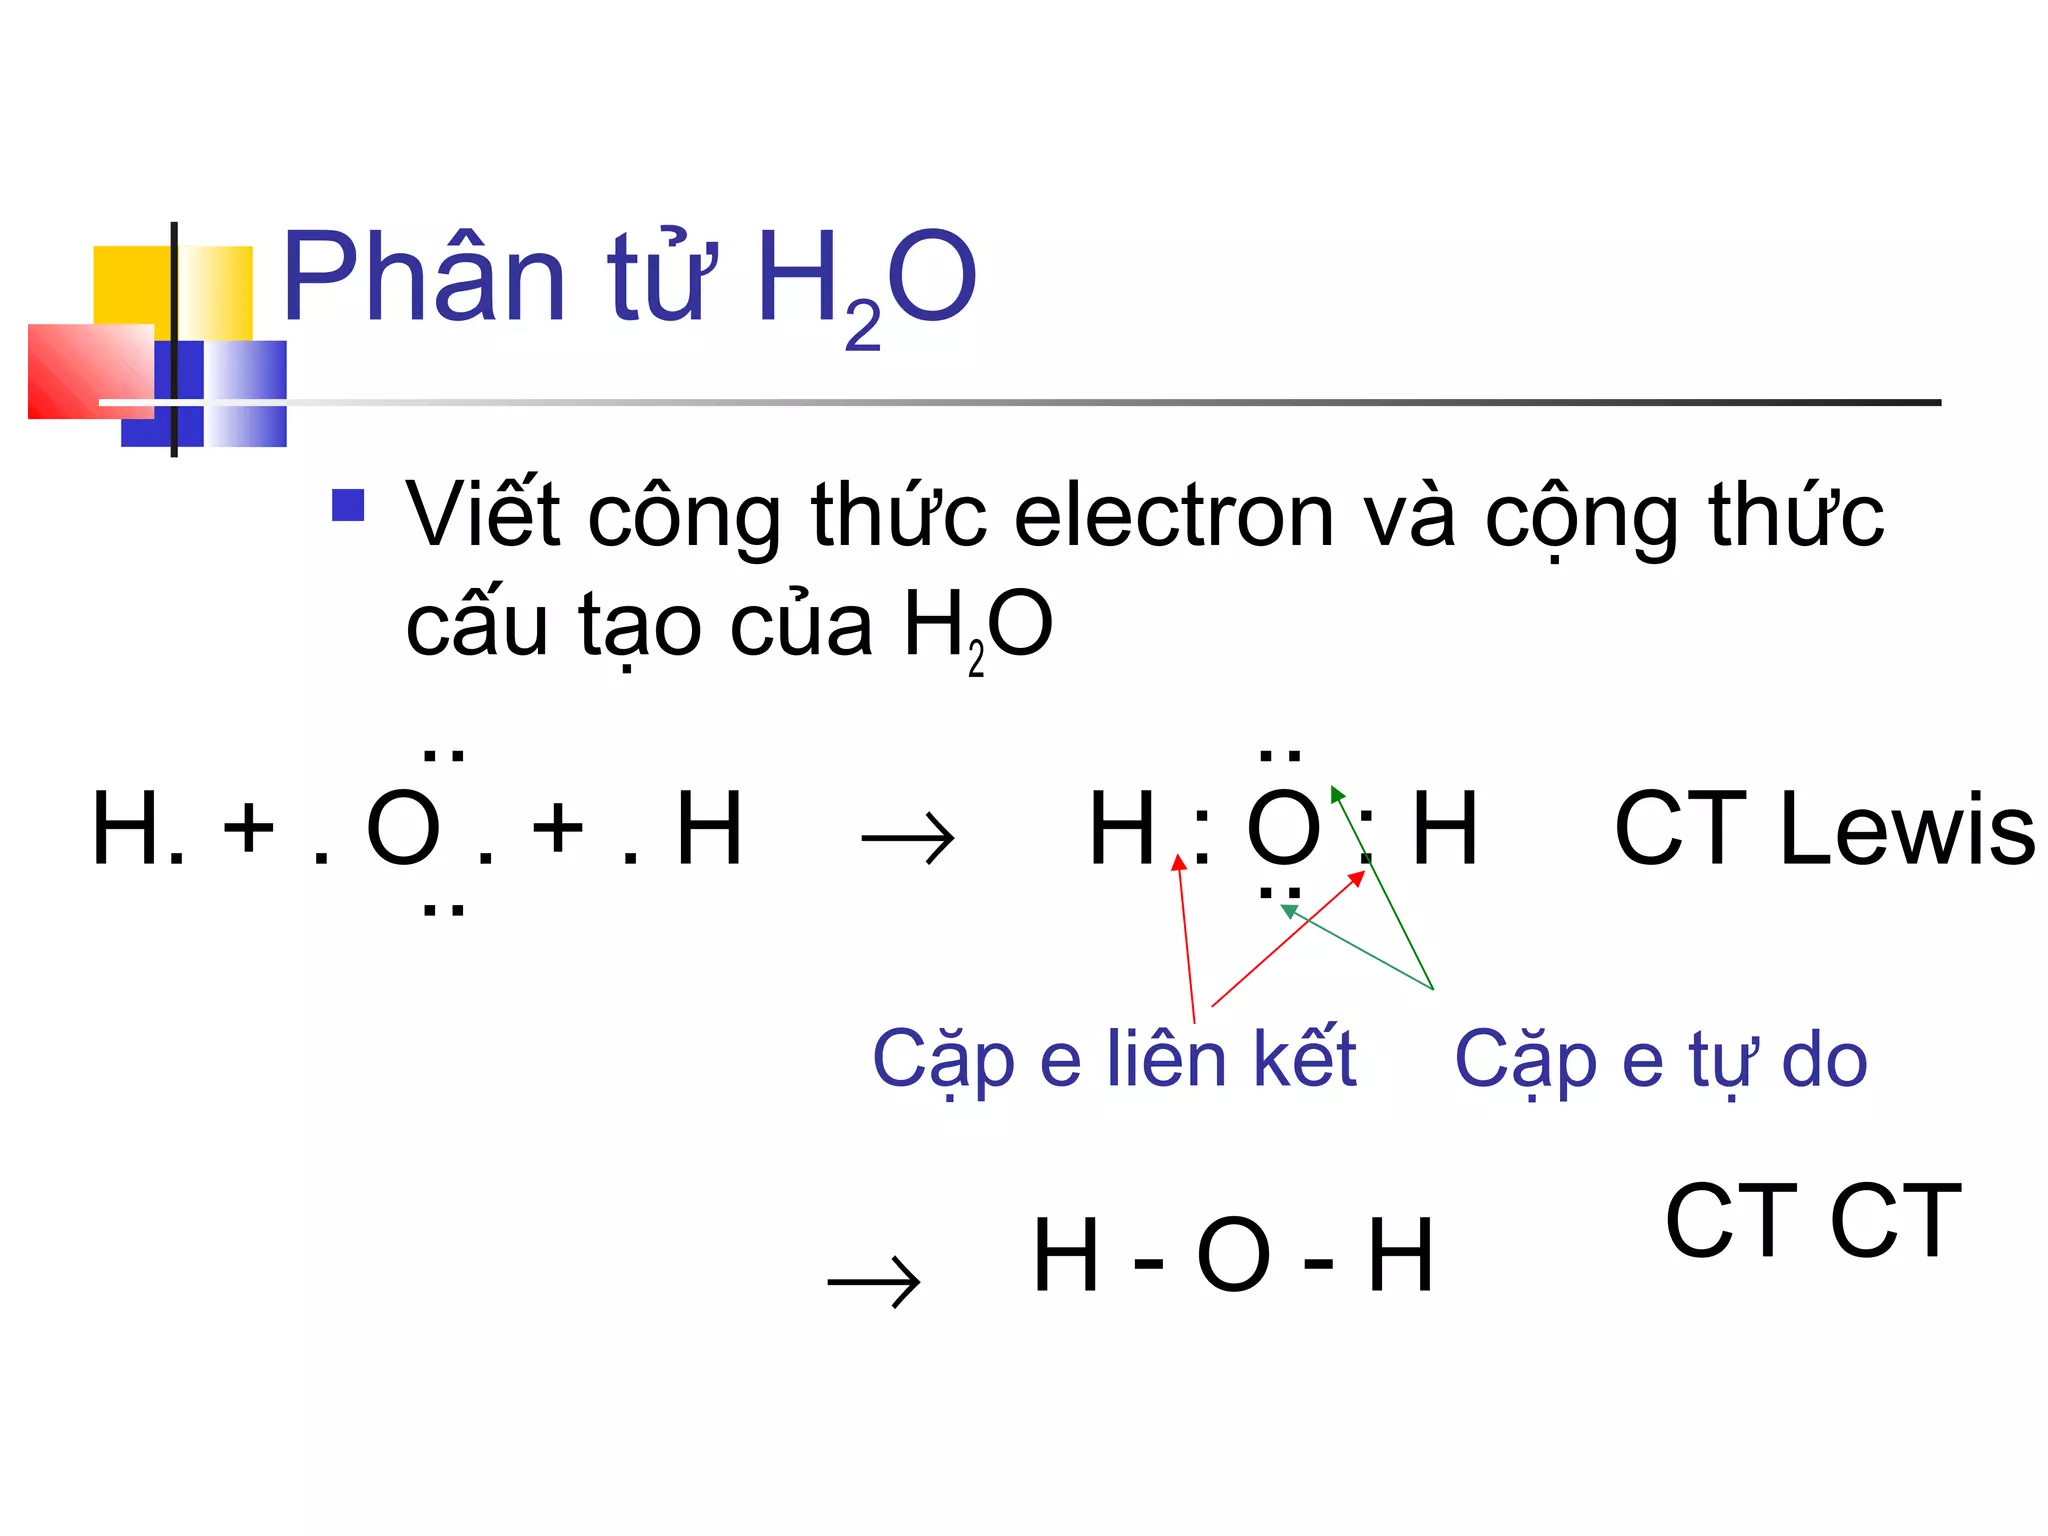 Nêu một số hợp chất hiđro nhớ vẽ mô hình phân tử cho hợp chất đó vẽ dạng  rỗng hoặc dạng đặc đều được  Hoc24